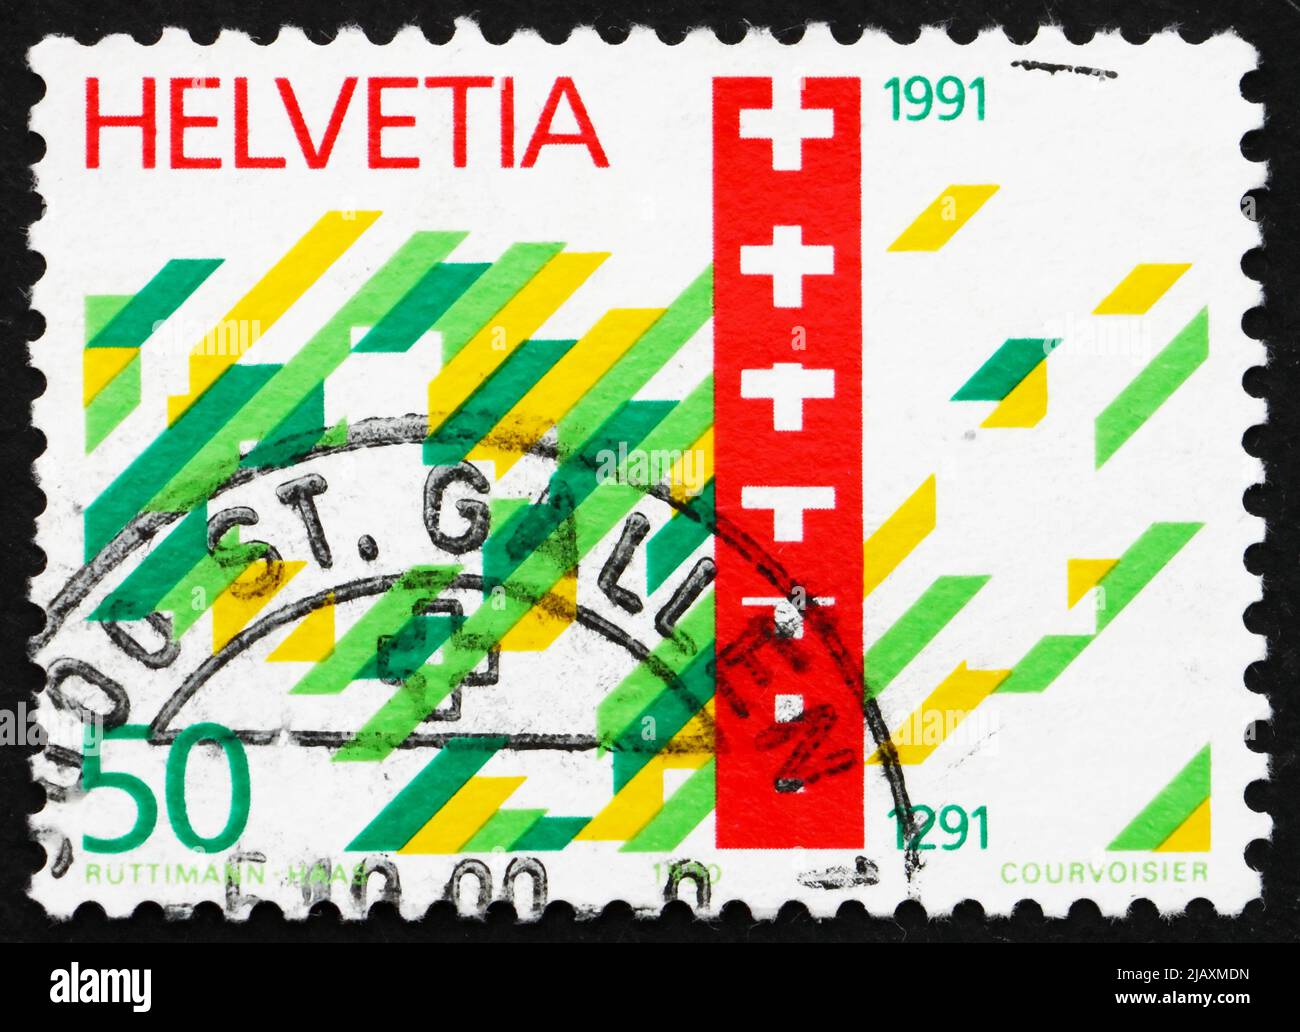 SVIZZERA - CIRCA 1990: Un francobollo stampato in Svizzera mostra francobollo Confederazione svizzera, 700th anni, circa 1990 Foto Stock